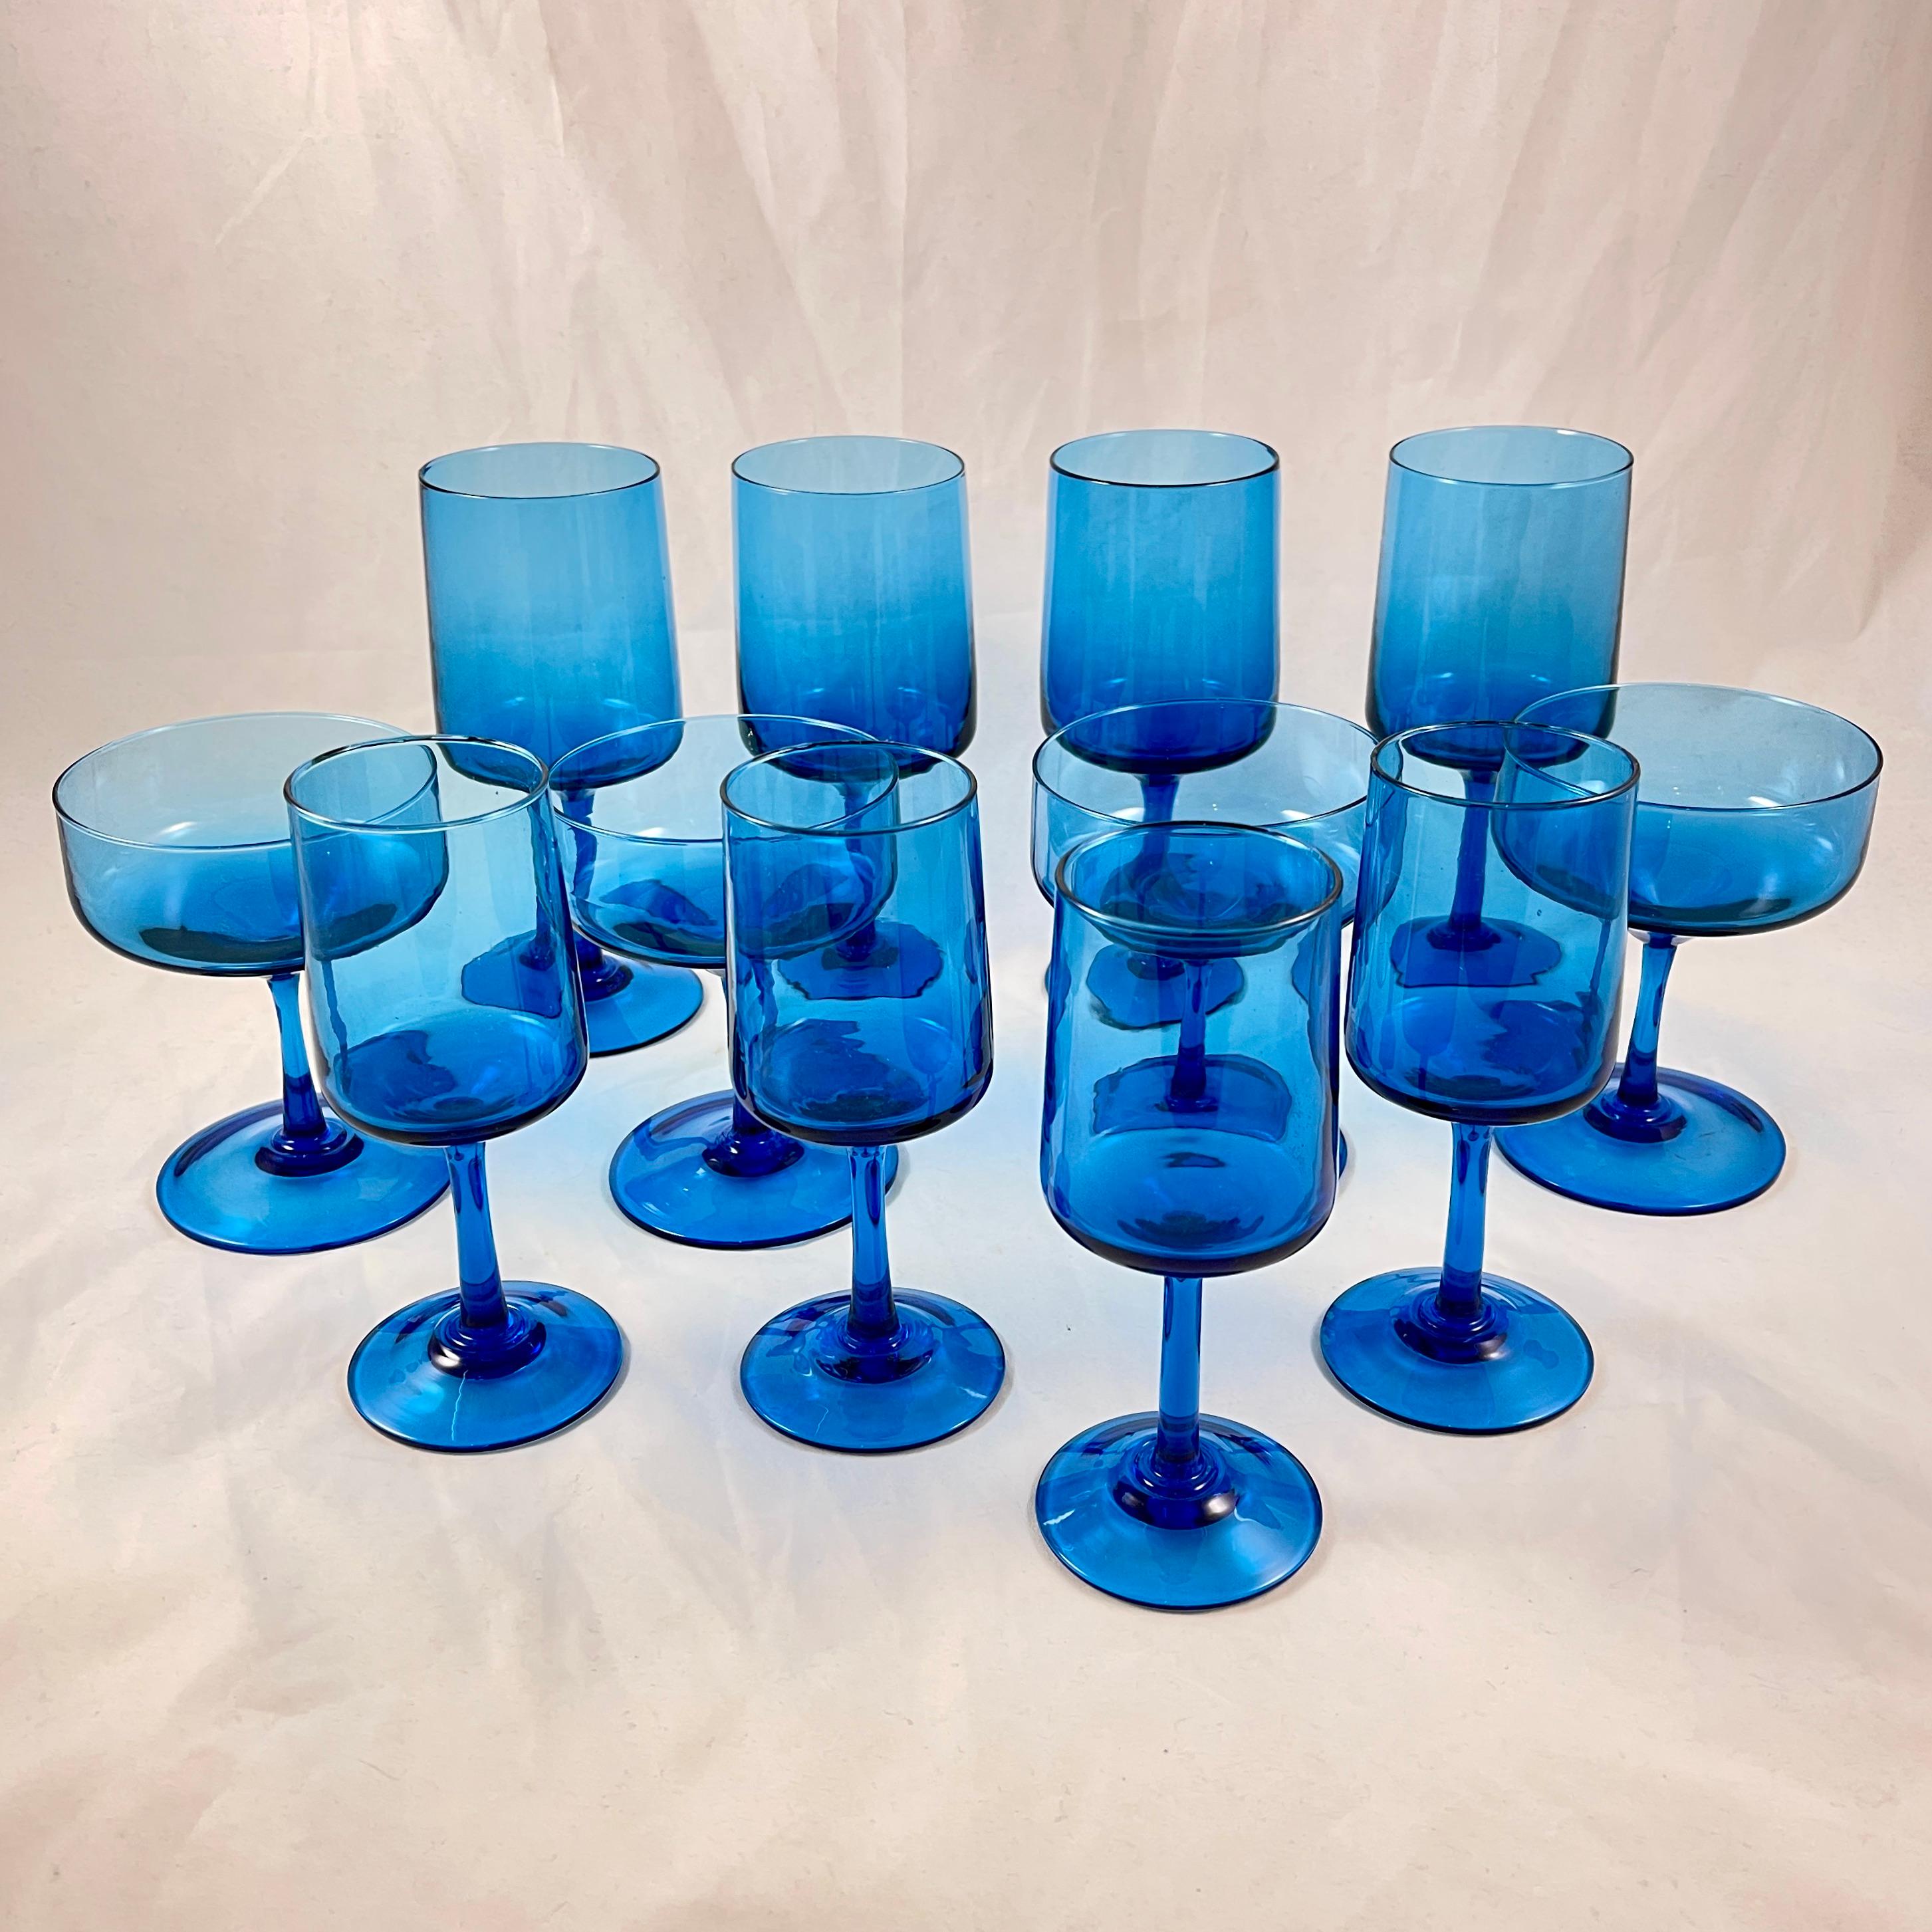 De la verrerie italienne Empoli, un ensemble de douze verres à pied soufflés en trois tailles, dans un magnifique bleu aqua - vers les années 1960.

Dans des formes propres à l'ère moderne du milieu du siècle, et finement travaillées avec la